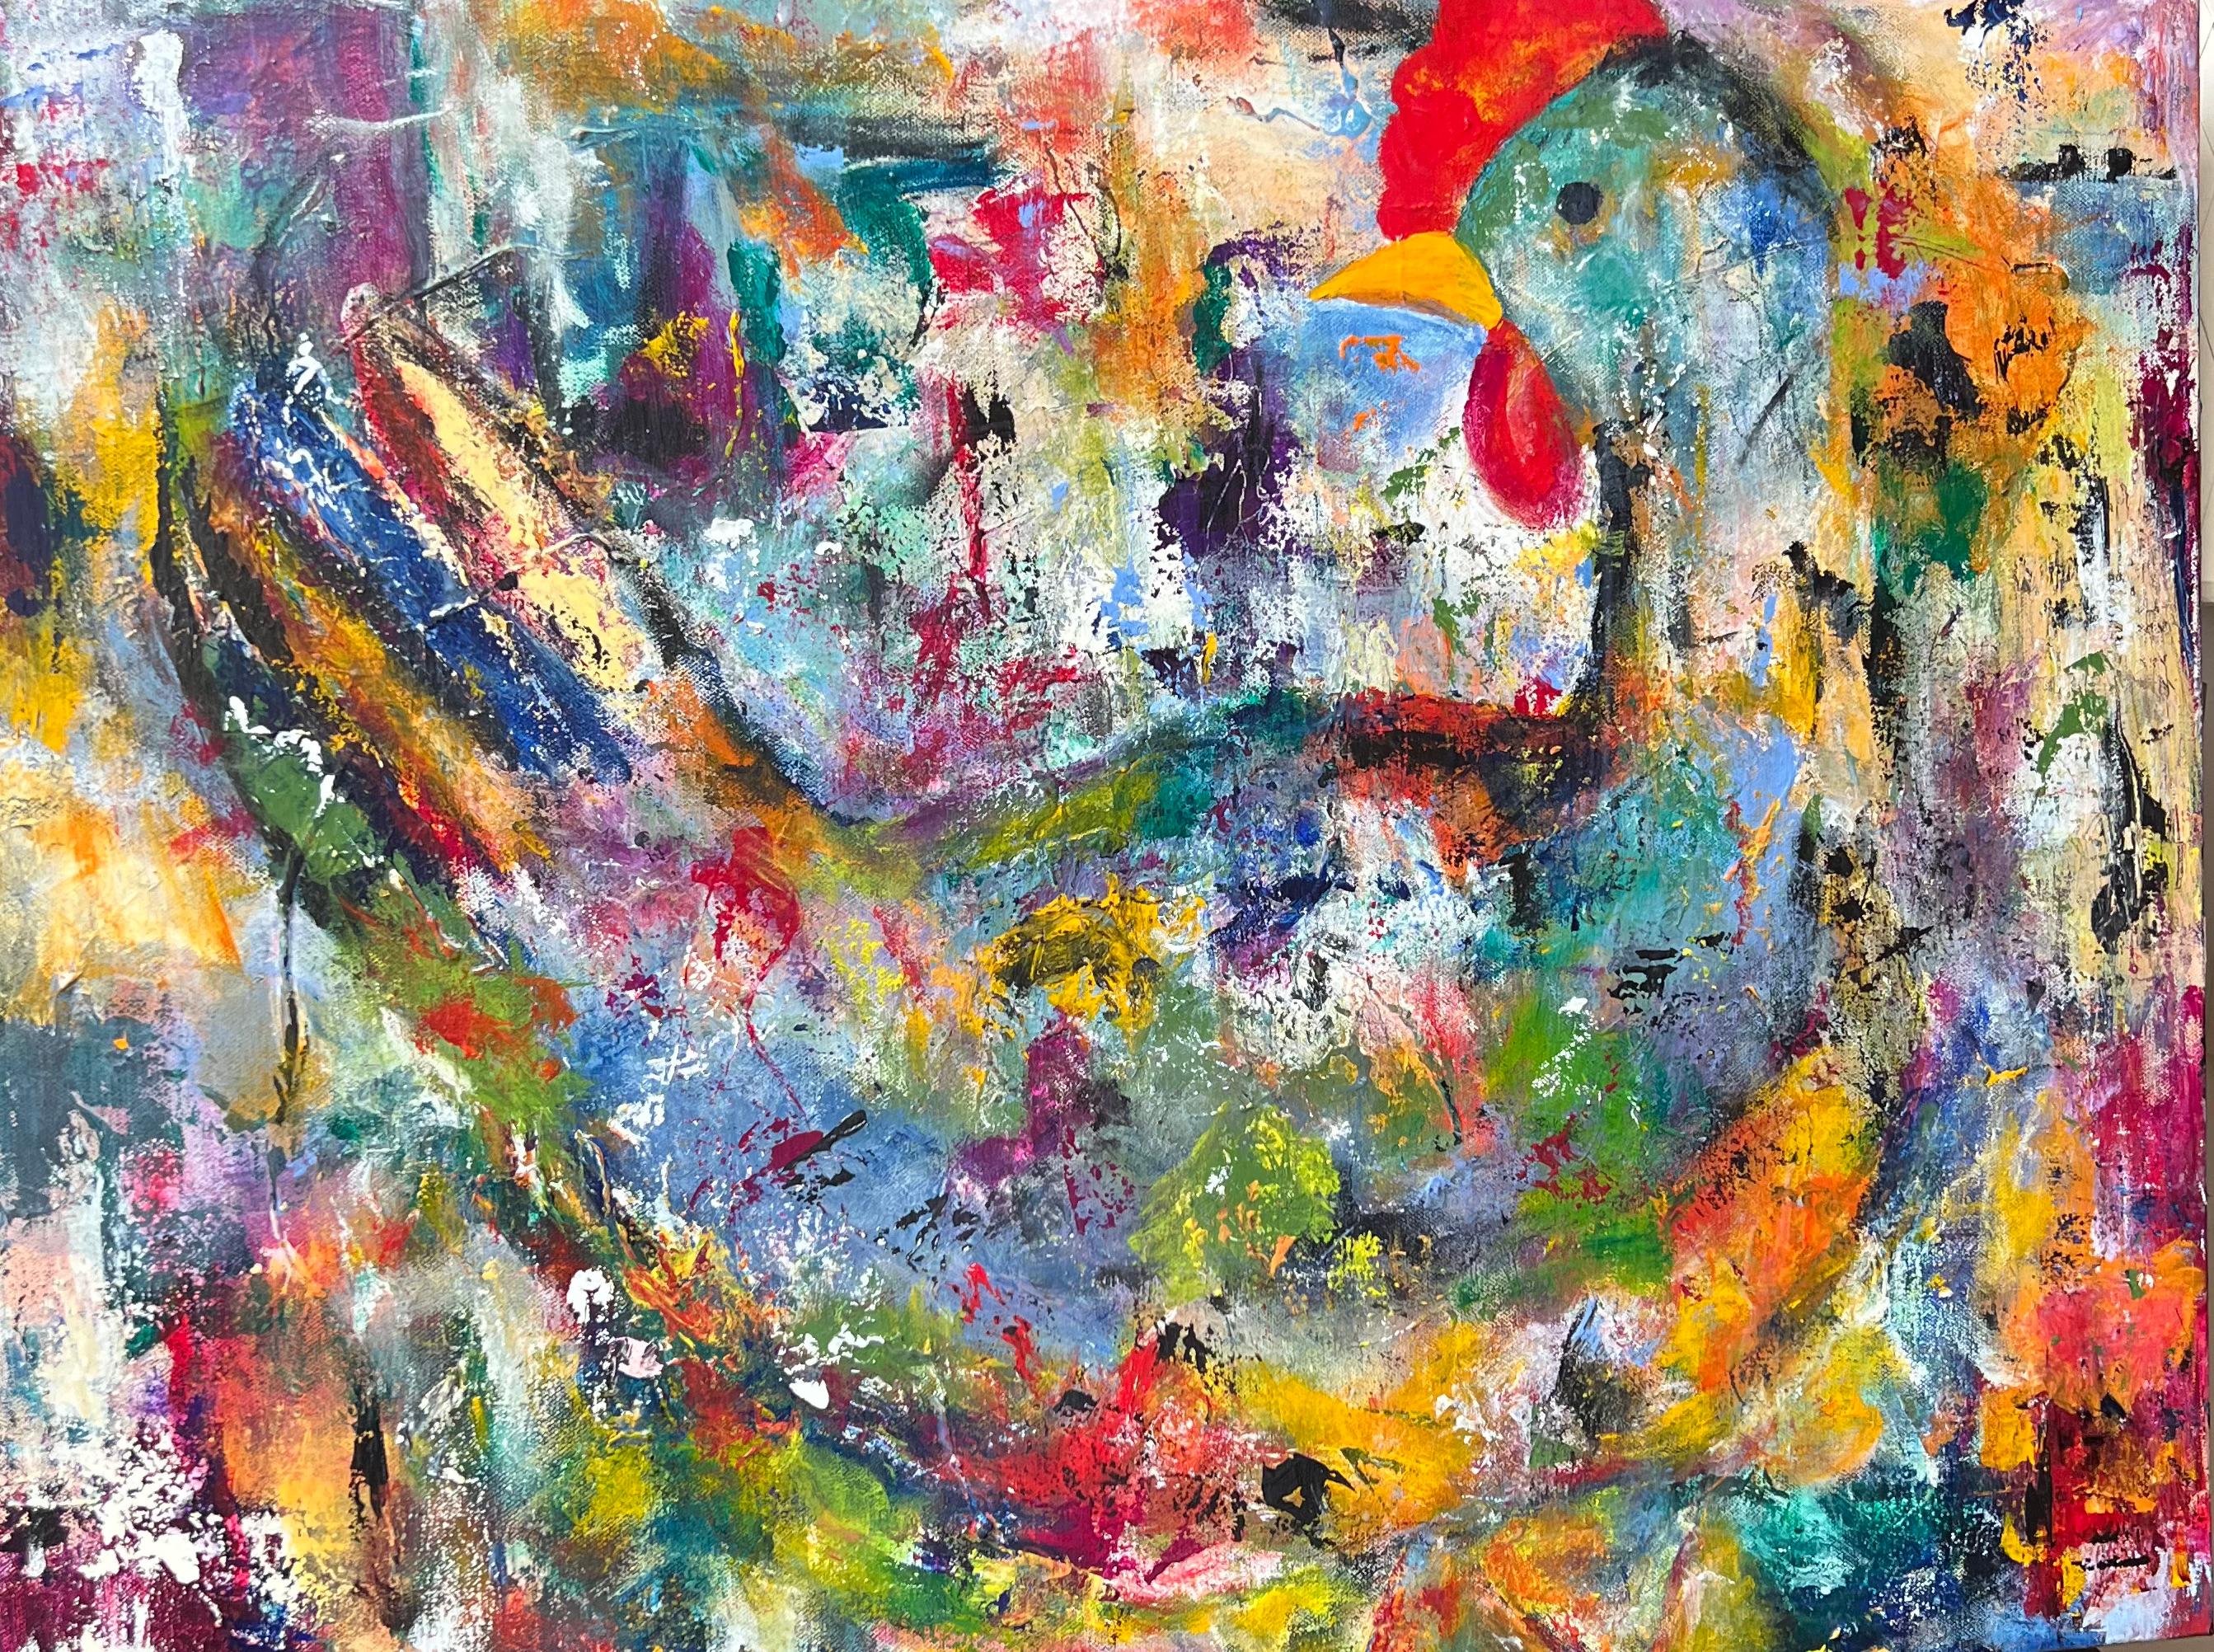 Abstract Painting Fredda Tone - Poulet lyrique, geste abstrait coloré et humoristique